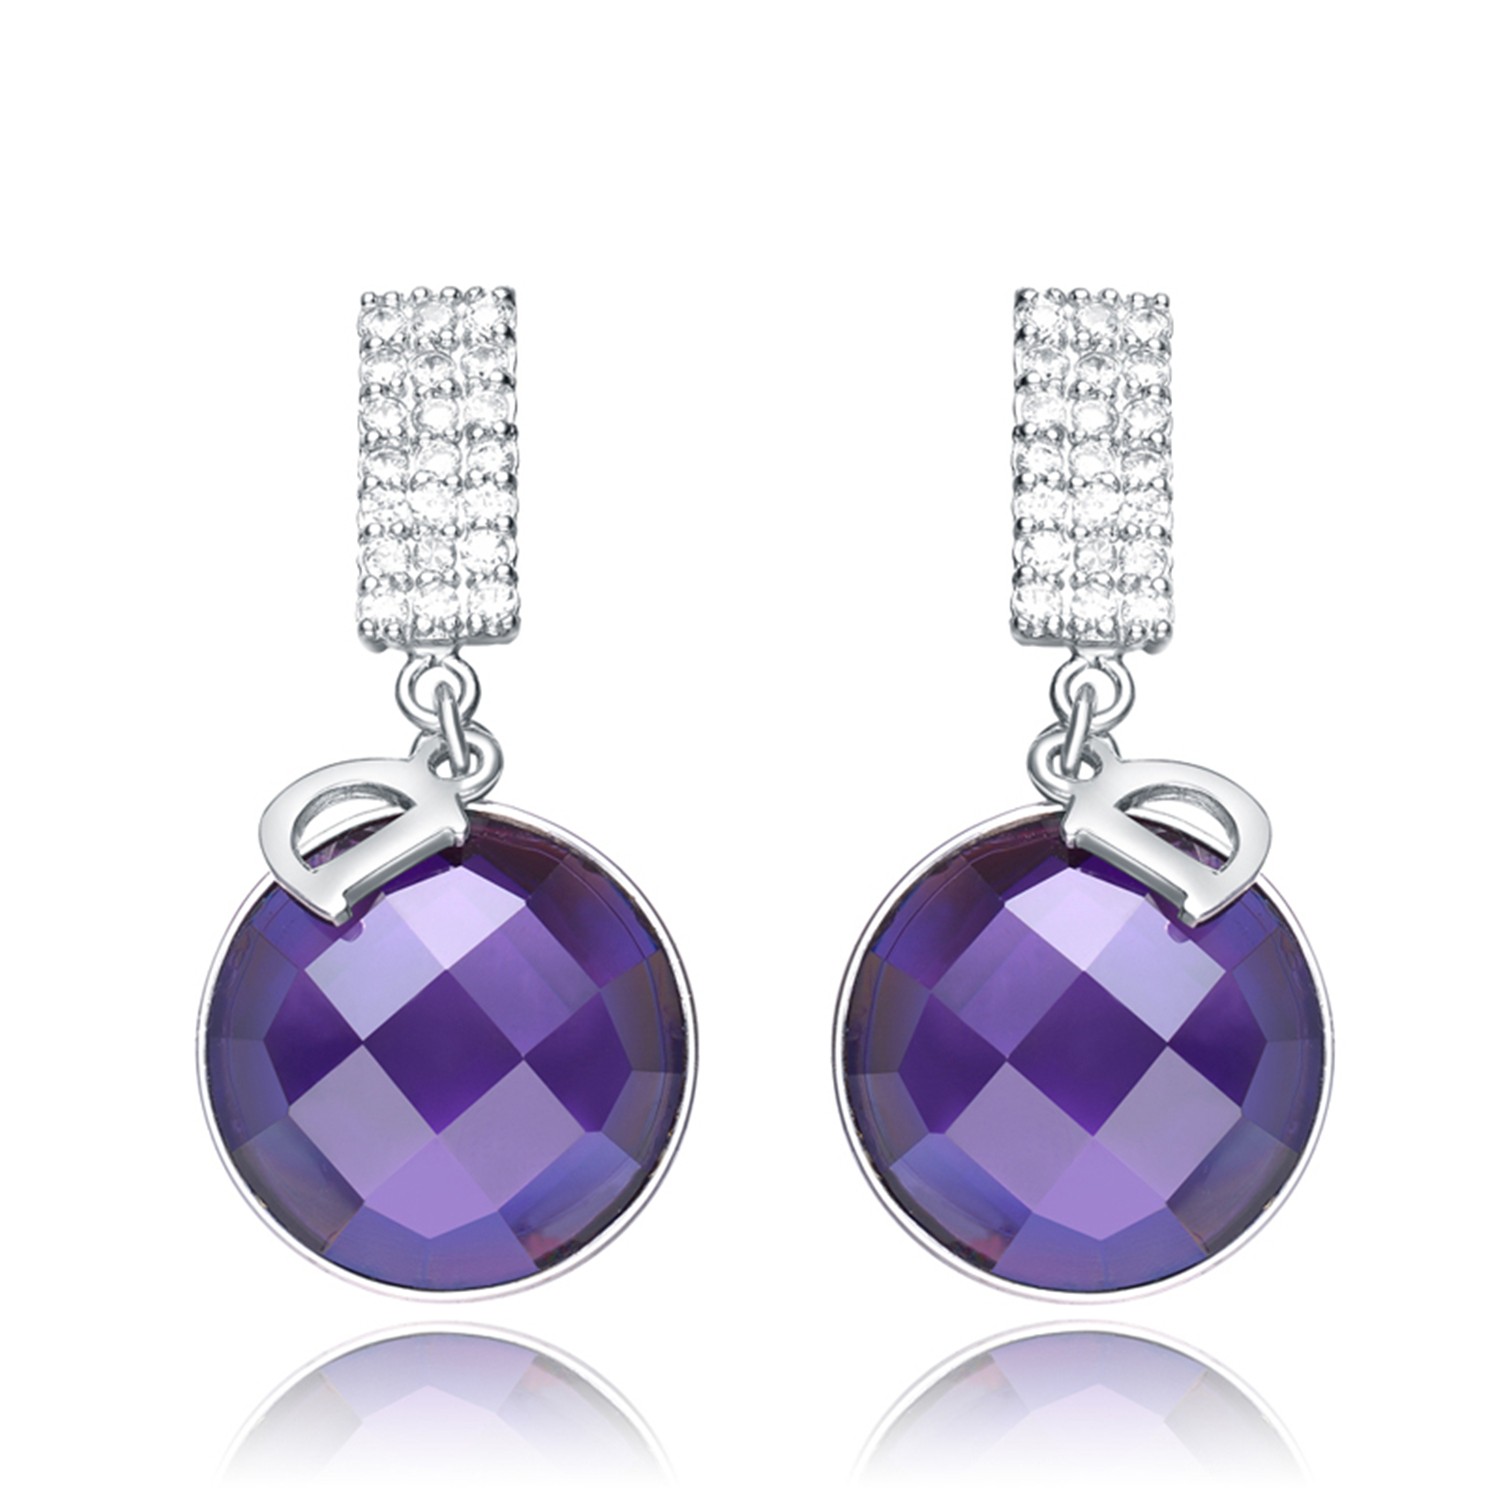 Fashion Earring 925 Sterling Silver Purple CZ pendant Women Gift Earring Drop Jewelry